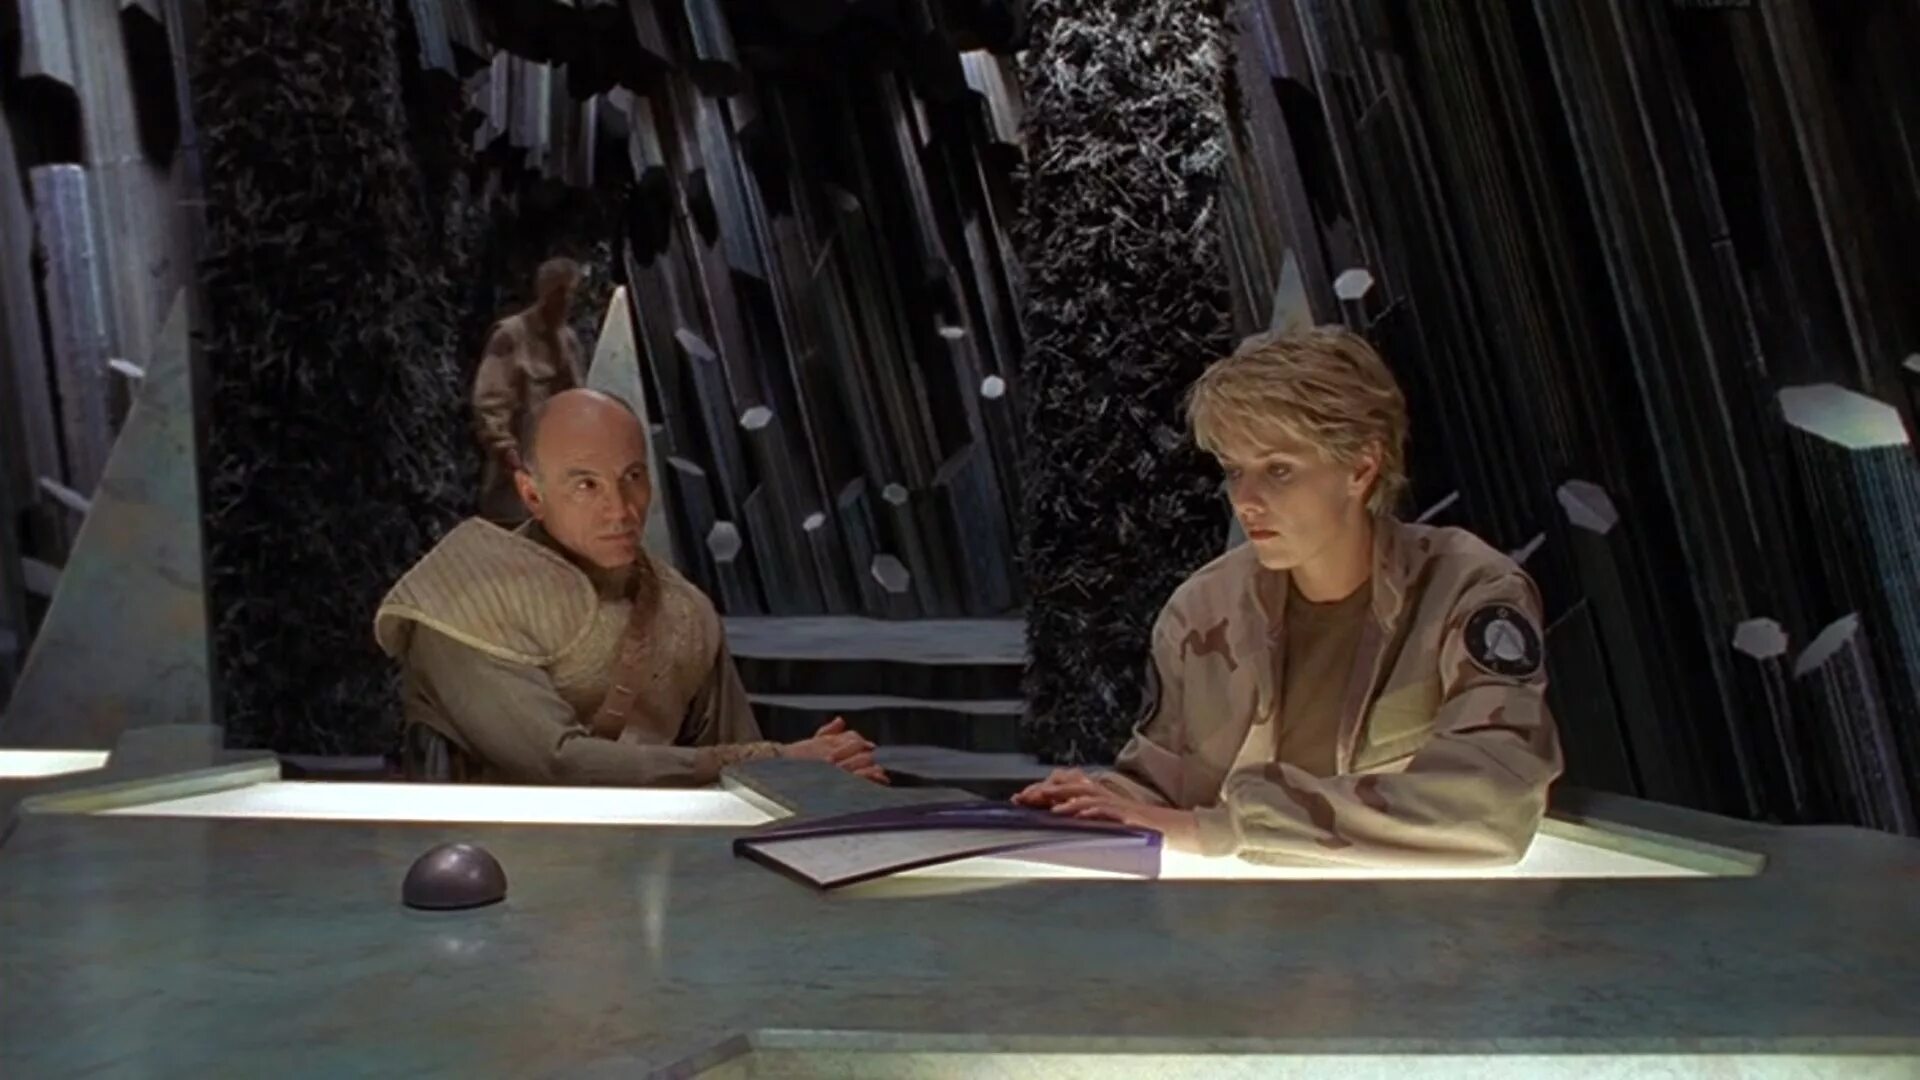 Звёздные врата: зв-1 (1997). Кармен Ардженциано Звёздные врата. Питер Уингфилд Звёздные врата.